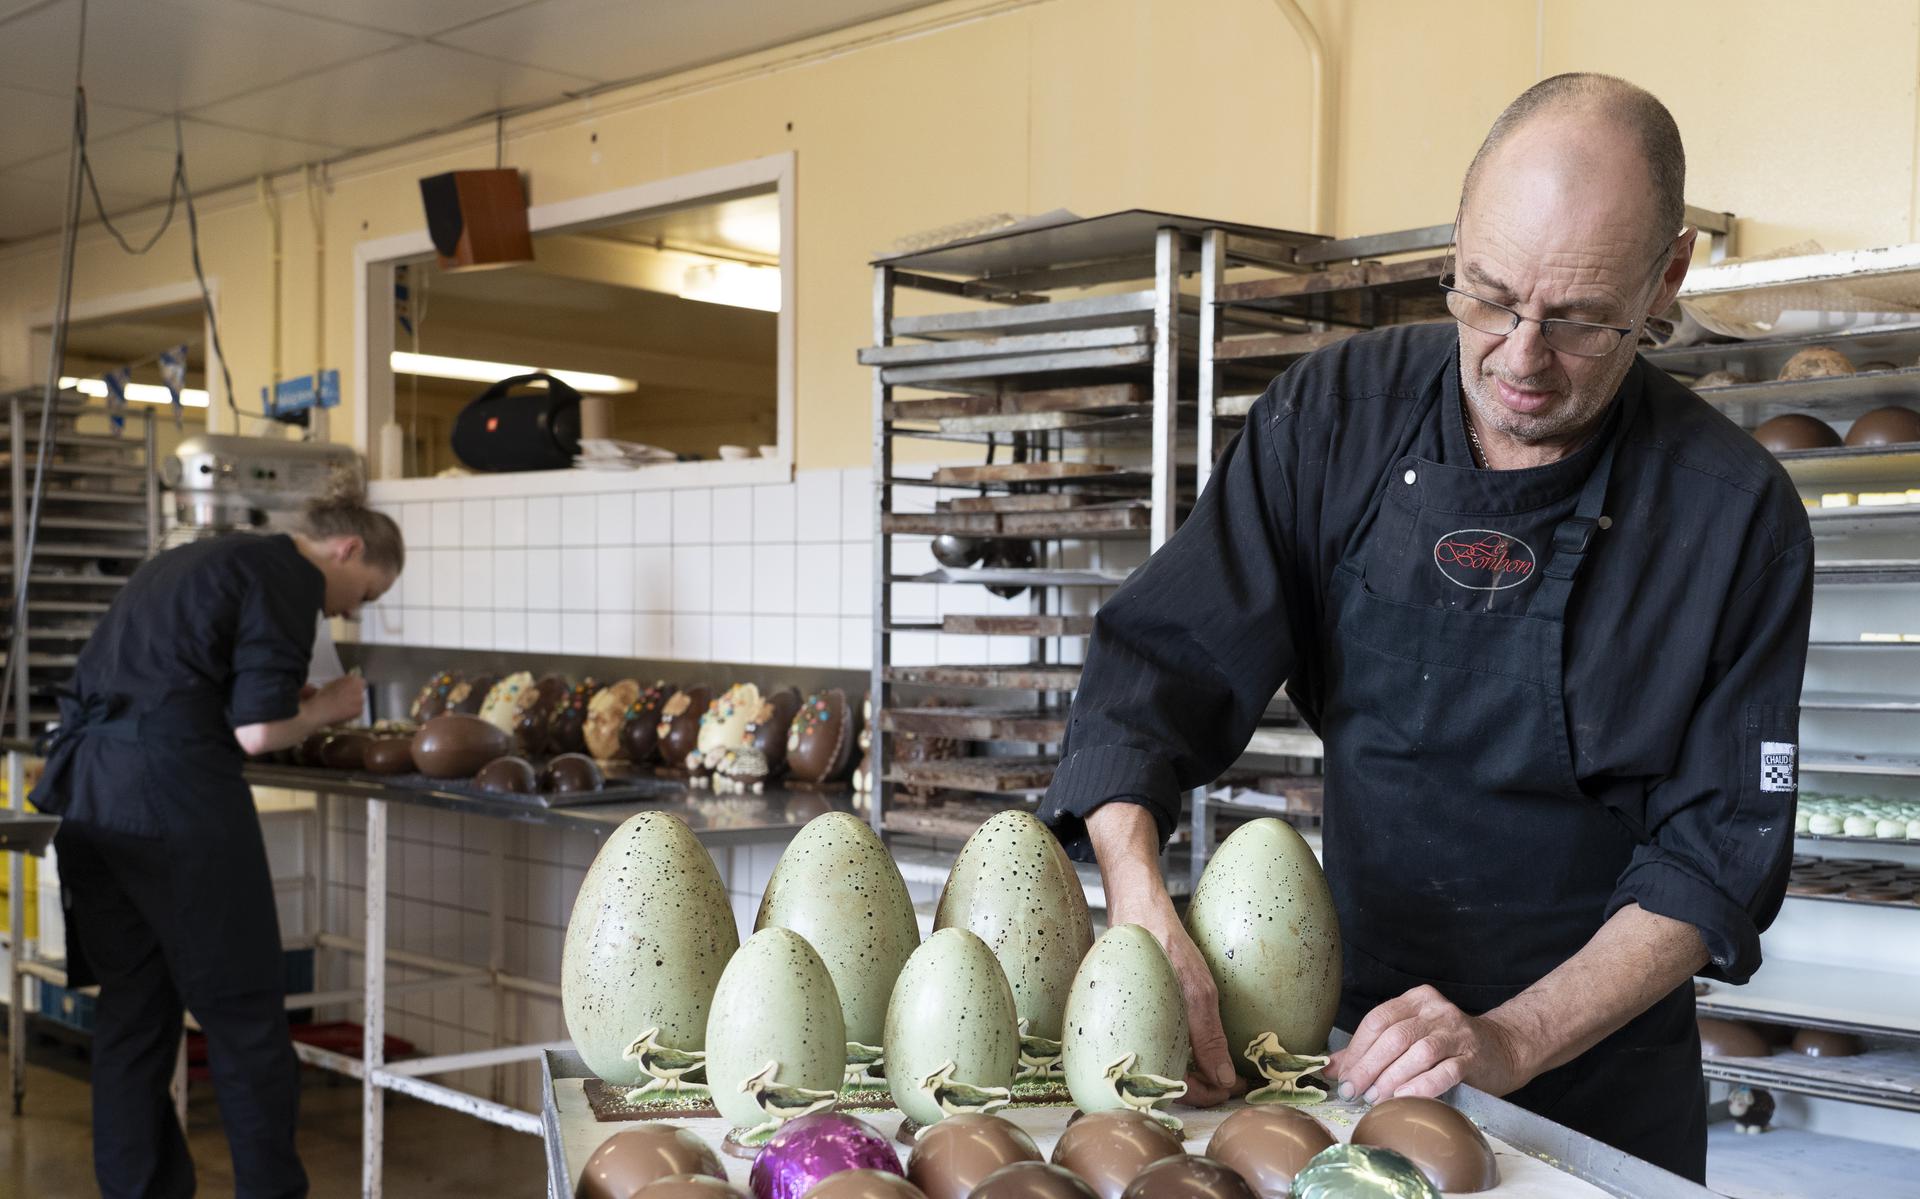 Gideon Sandtmann is eigenaar en chocolatier van Le Bonbon in Gytsjerk, achter medewerkster Tetsje Couperus.